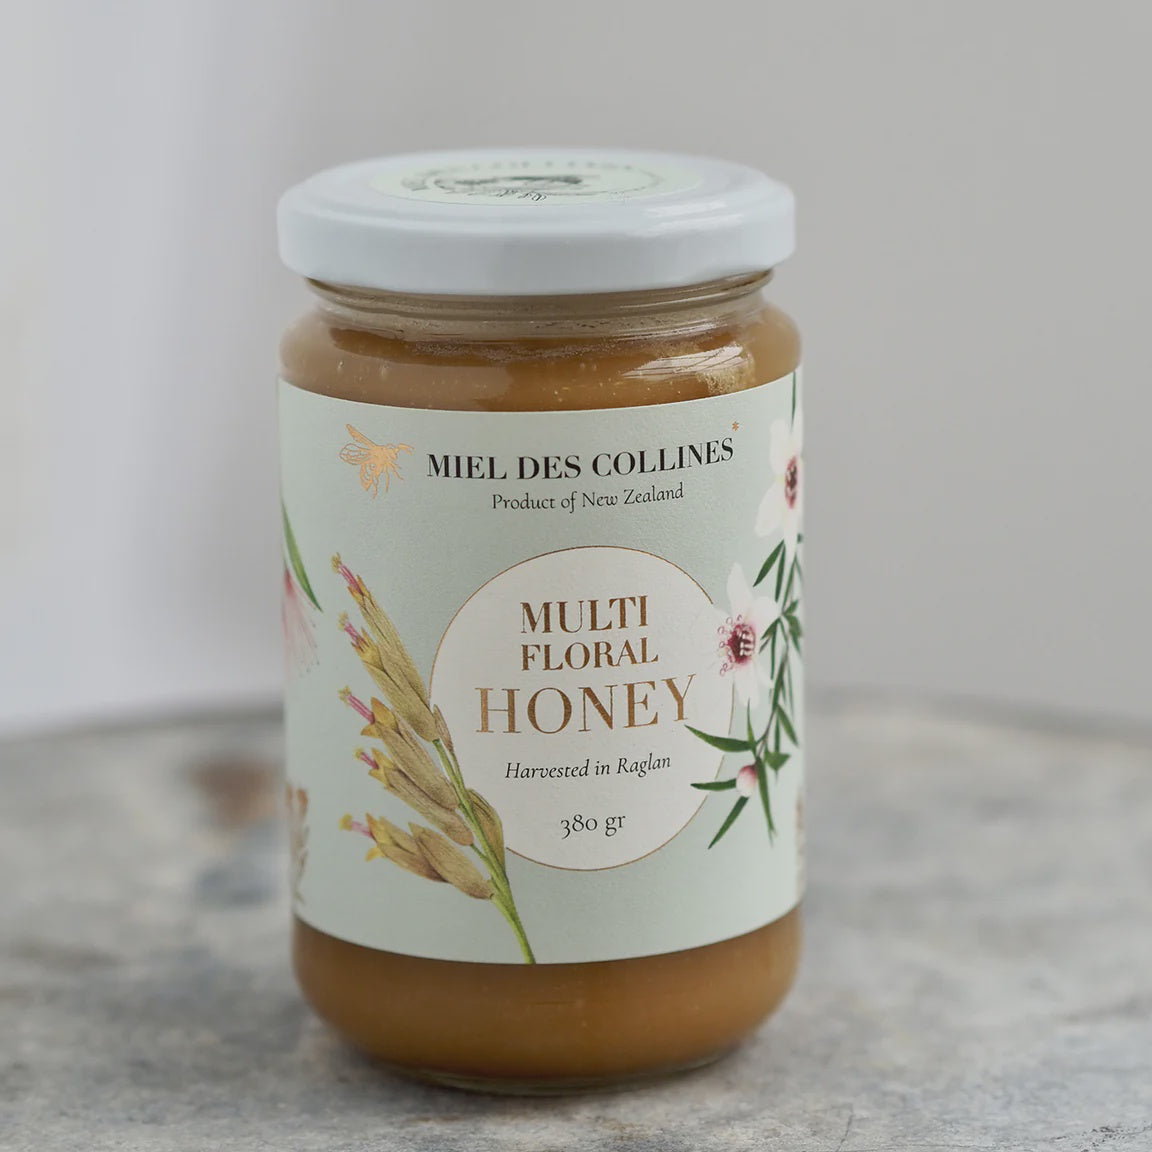 Miel des Collines Multi Floral Honey 380g